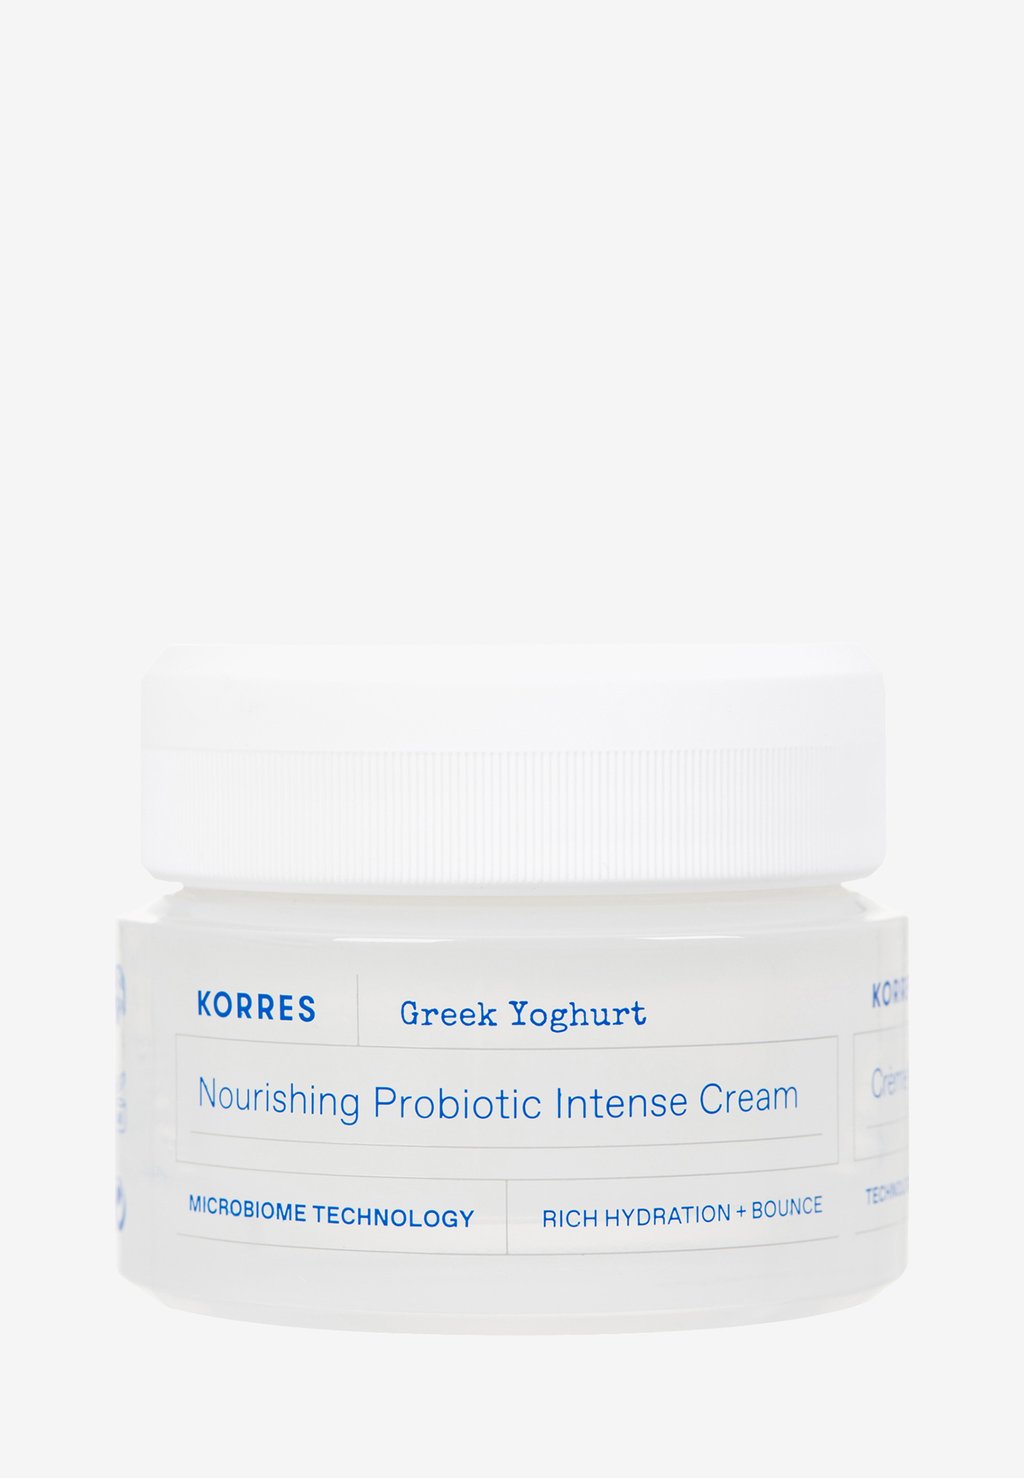 Дневной крем Greek Yoghurt Nourishing Probiotic Intense Cream KORRES крем для сухой кожи korres greek yoghurt nourishing probiotic intense cream 40 мл